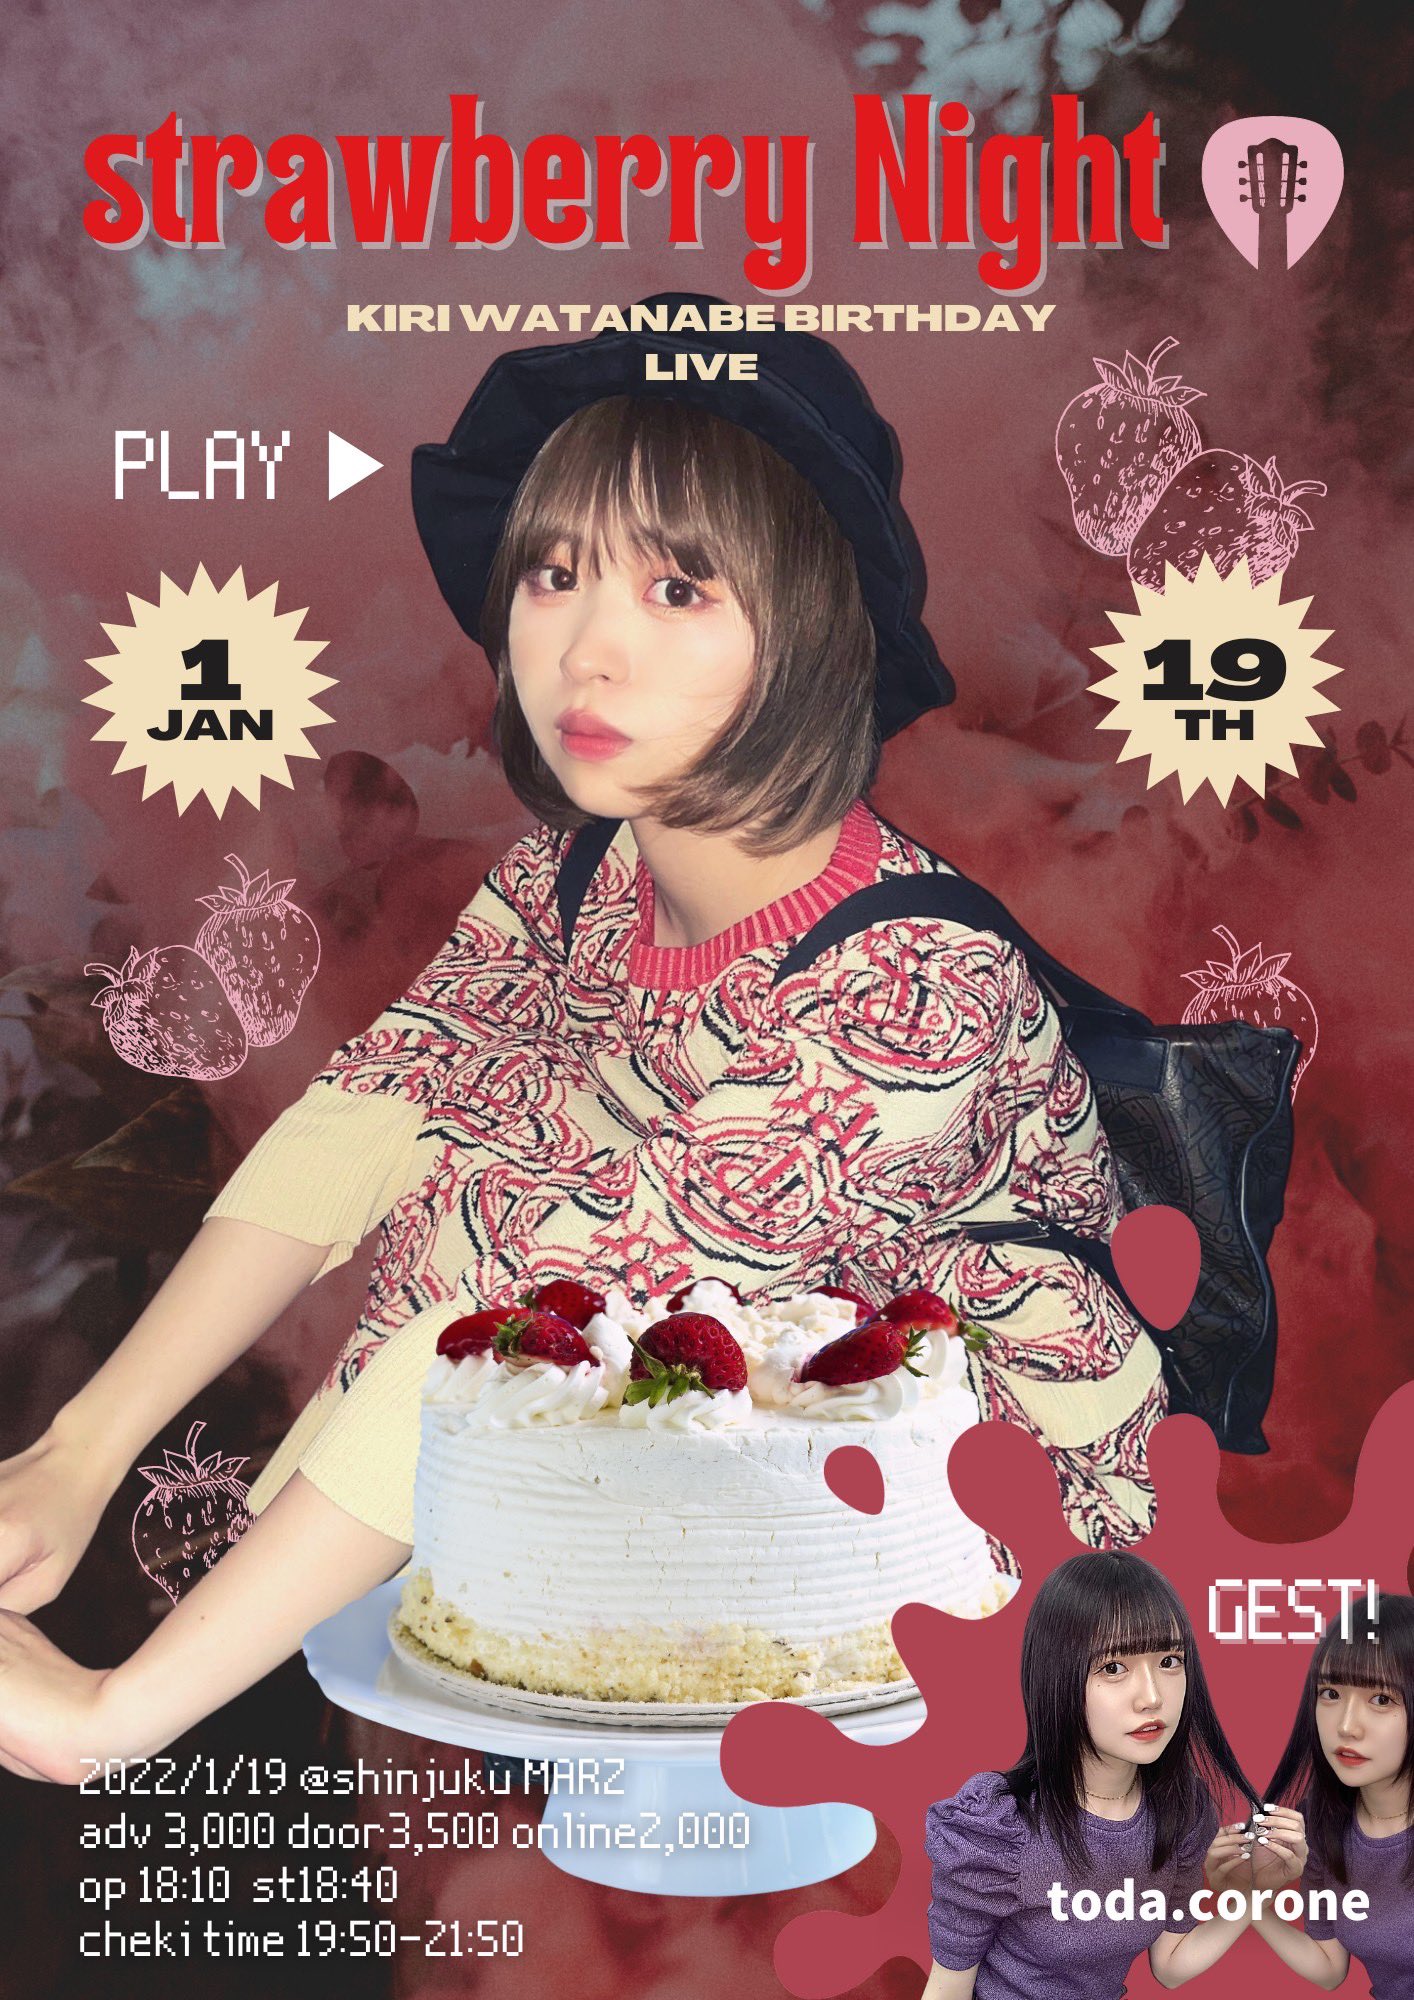 KIRI WATANABE BIRTHDAY LIVE 『Strawberry night』